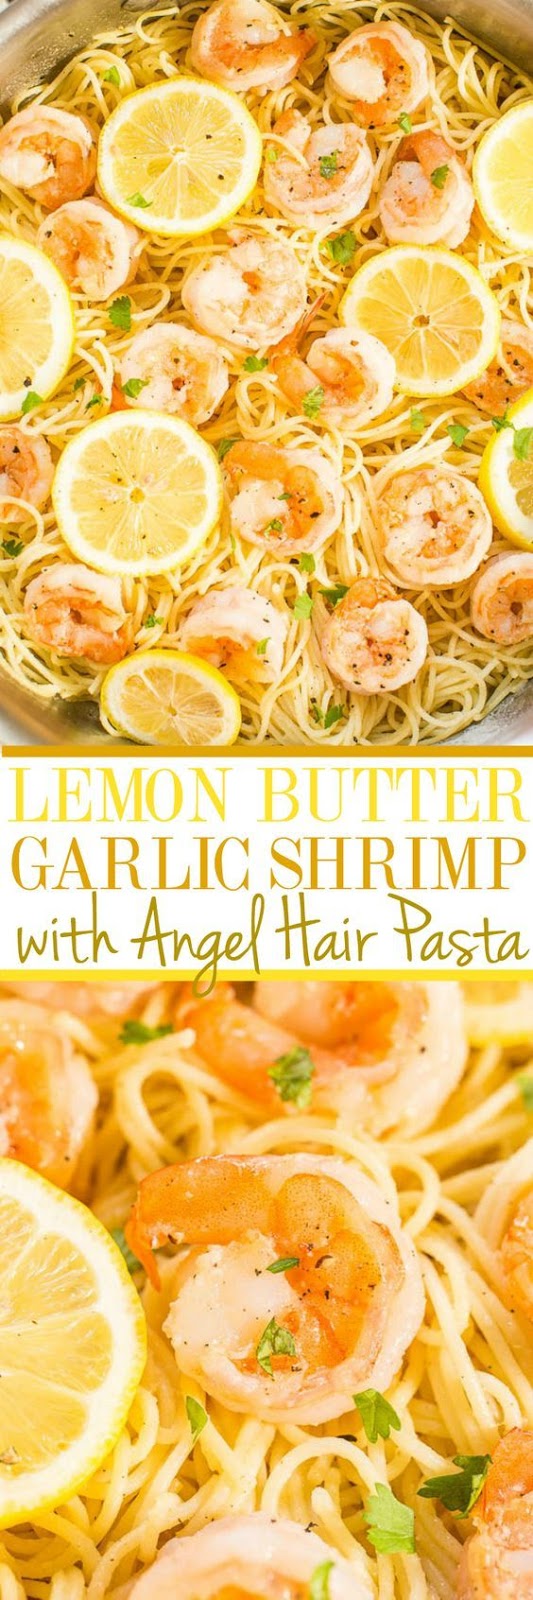 Lemon Butter Garlic Shrimp with Angel Hair Pasta